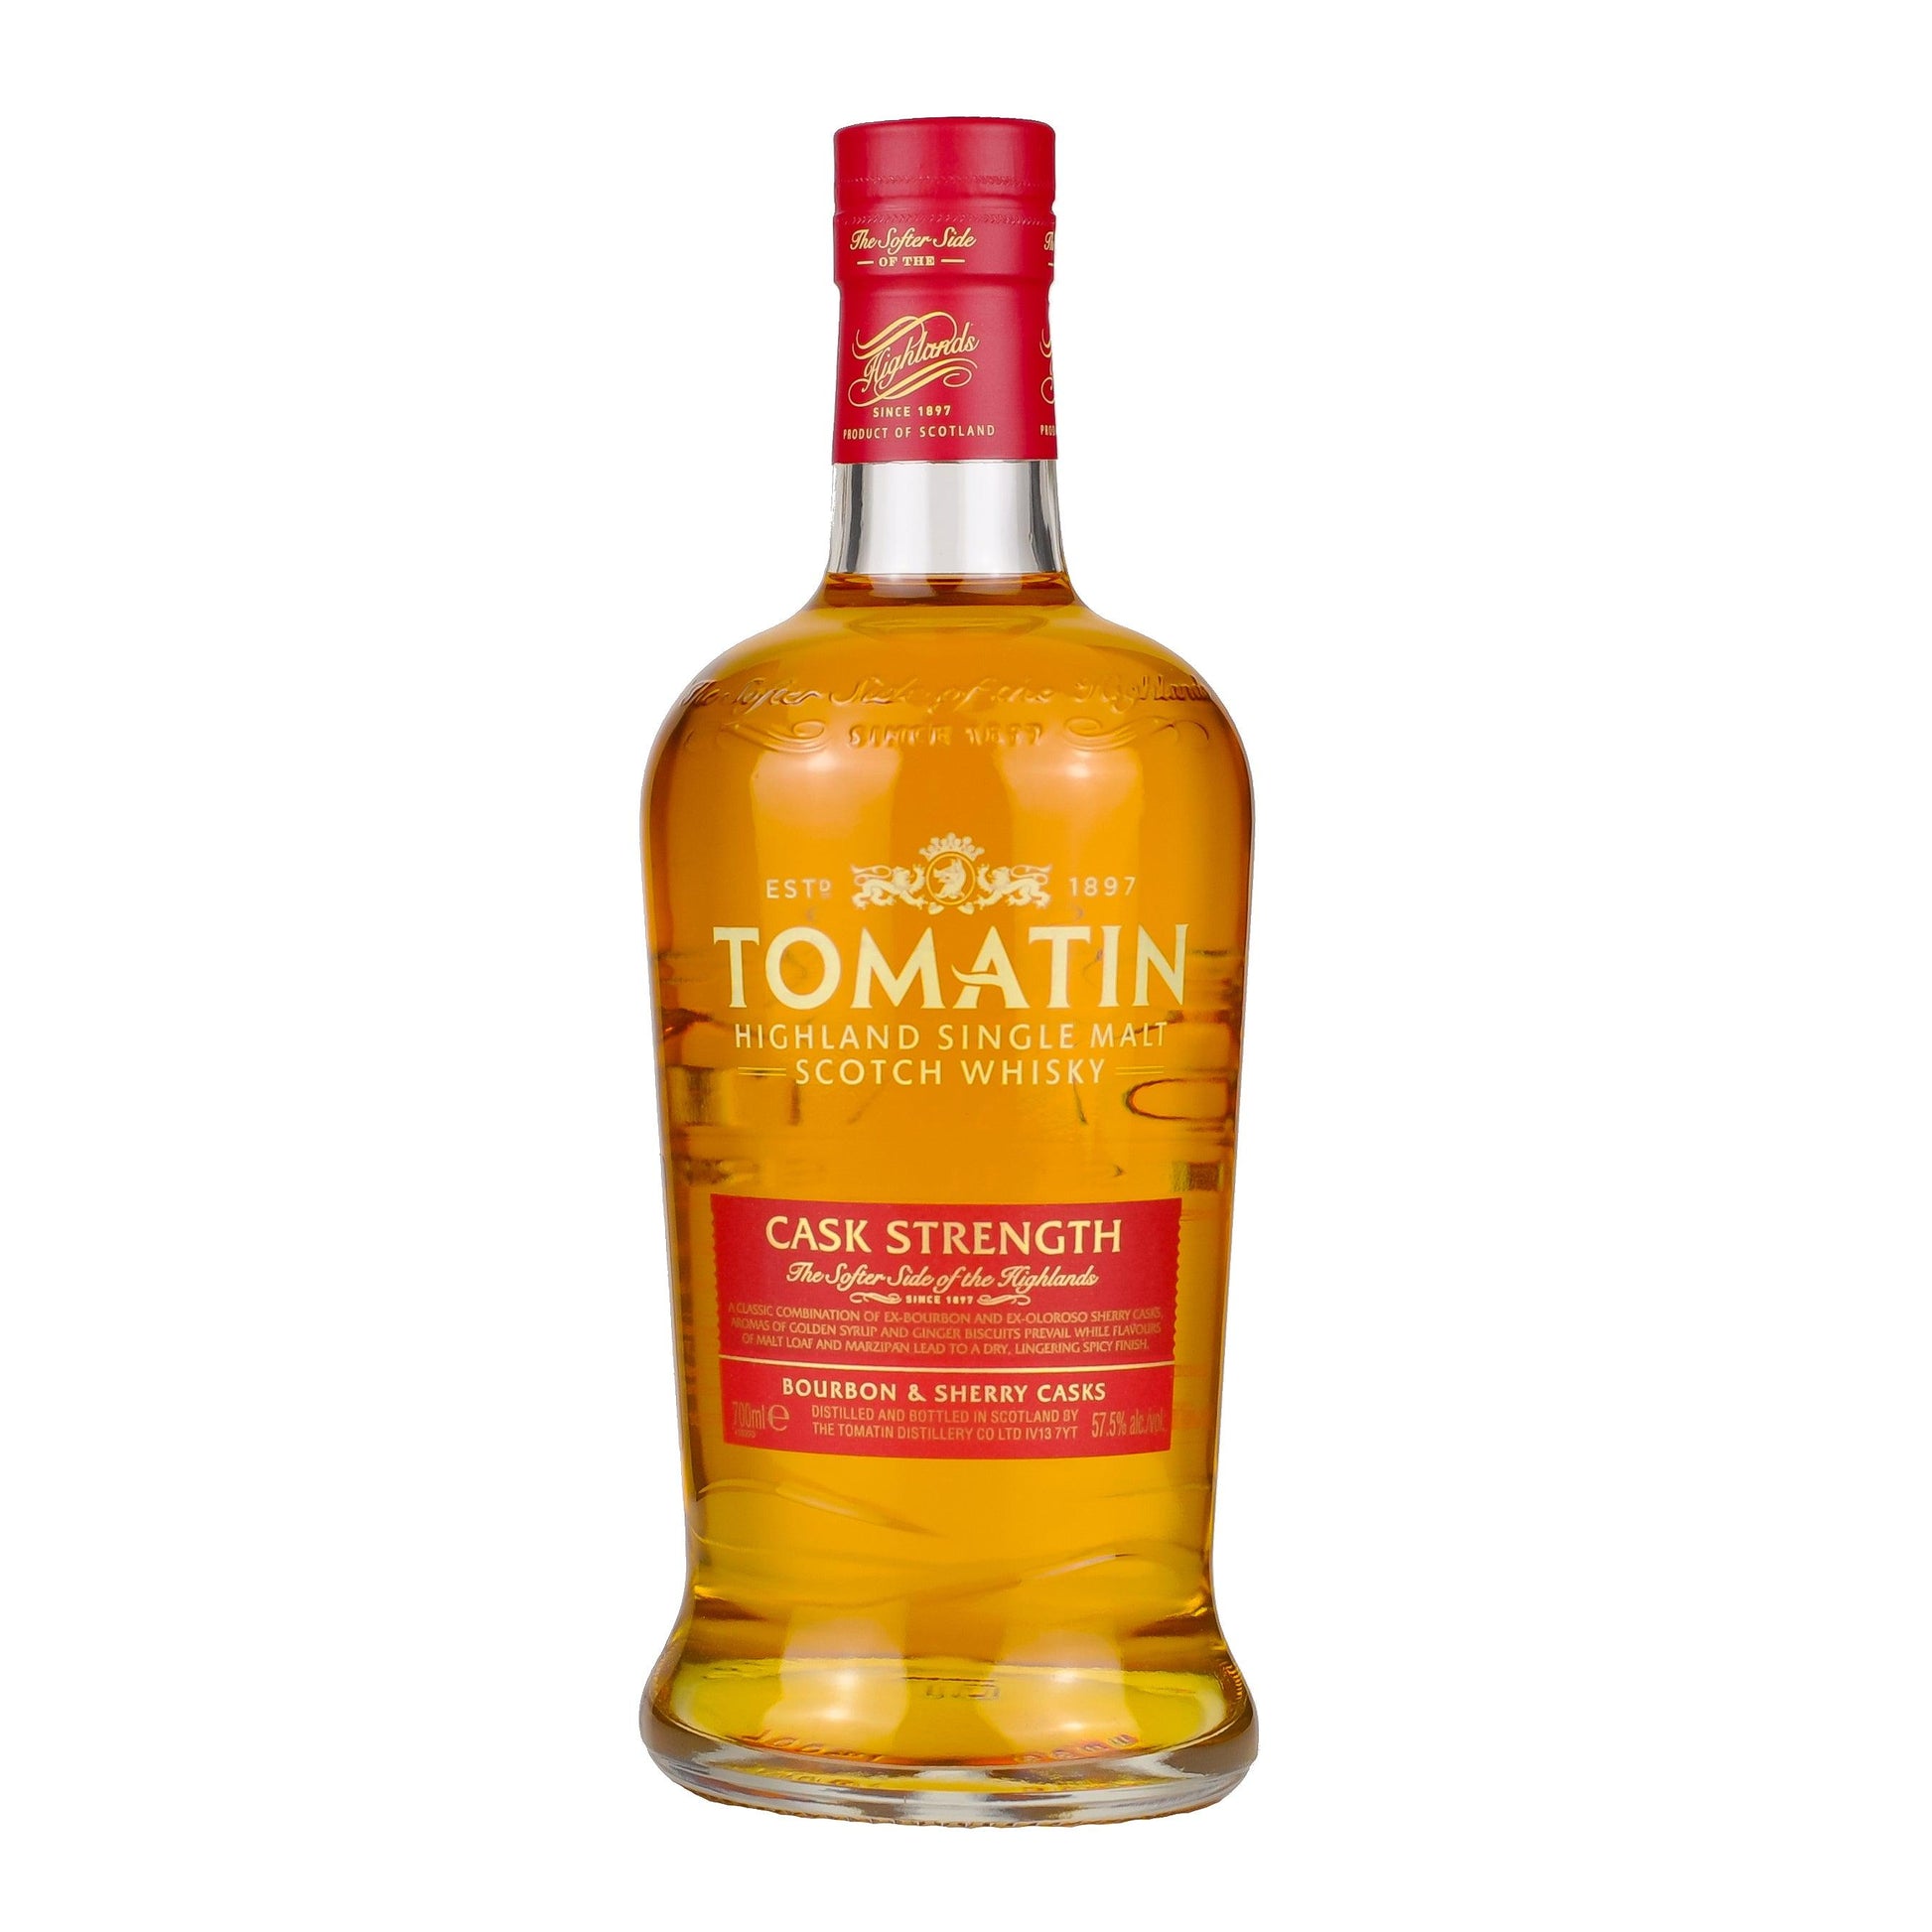 Tomatin Cask Strength - Whisky Grail